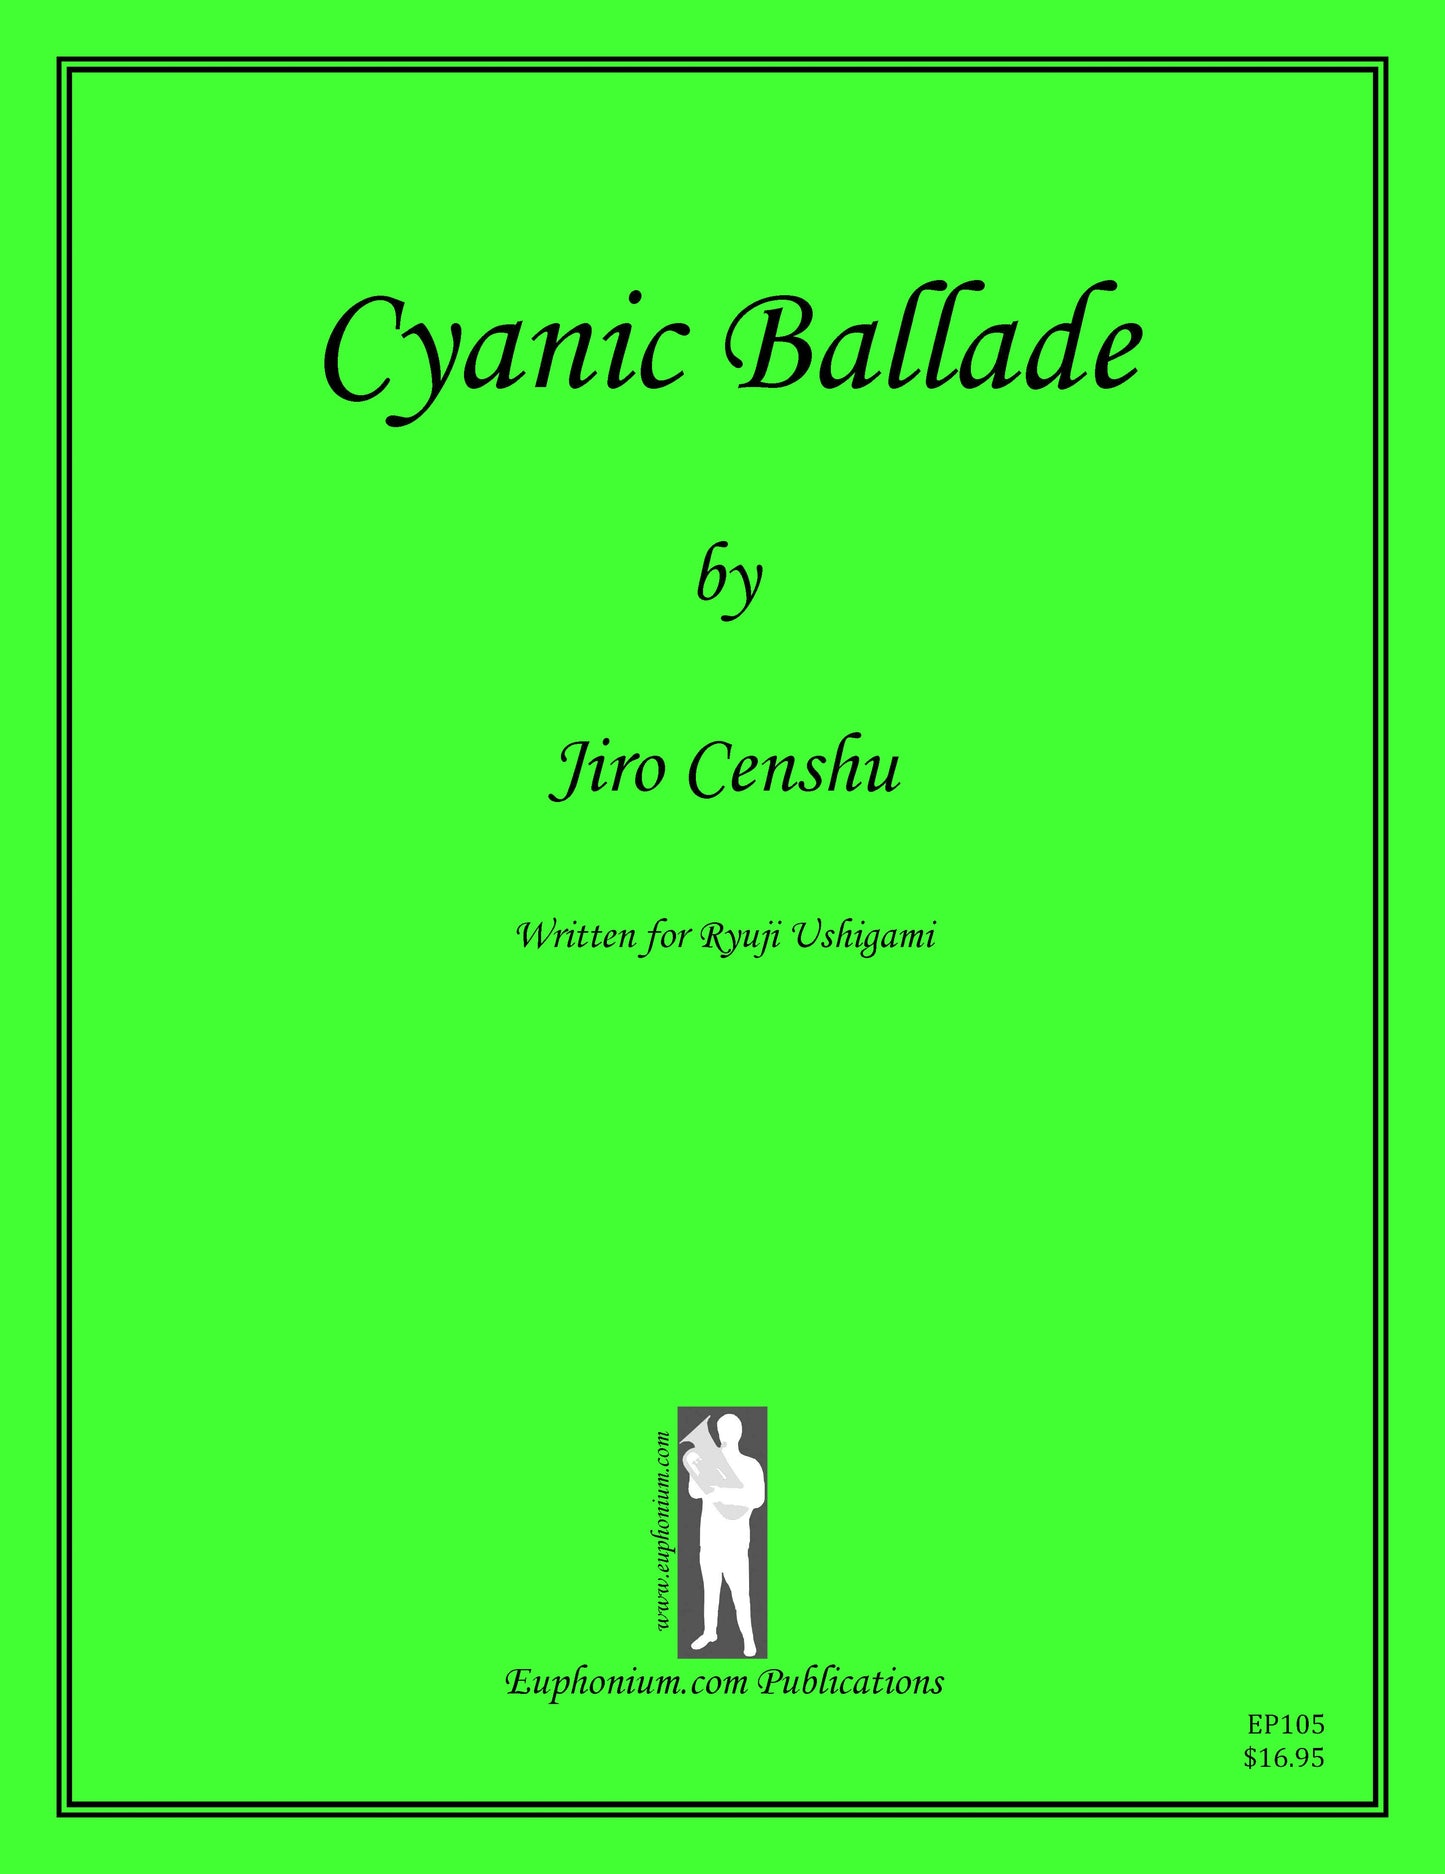 Censhu, Jiro - Cyanic Ballade - DOWNLOAD